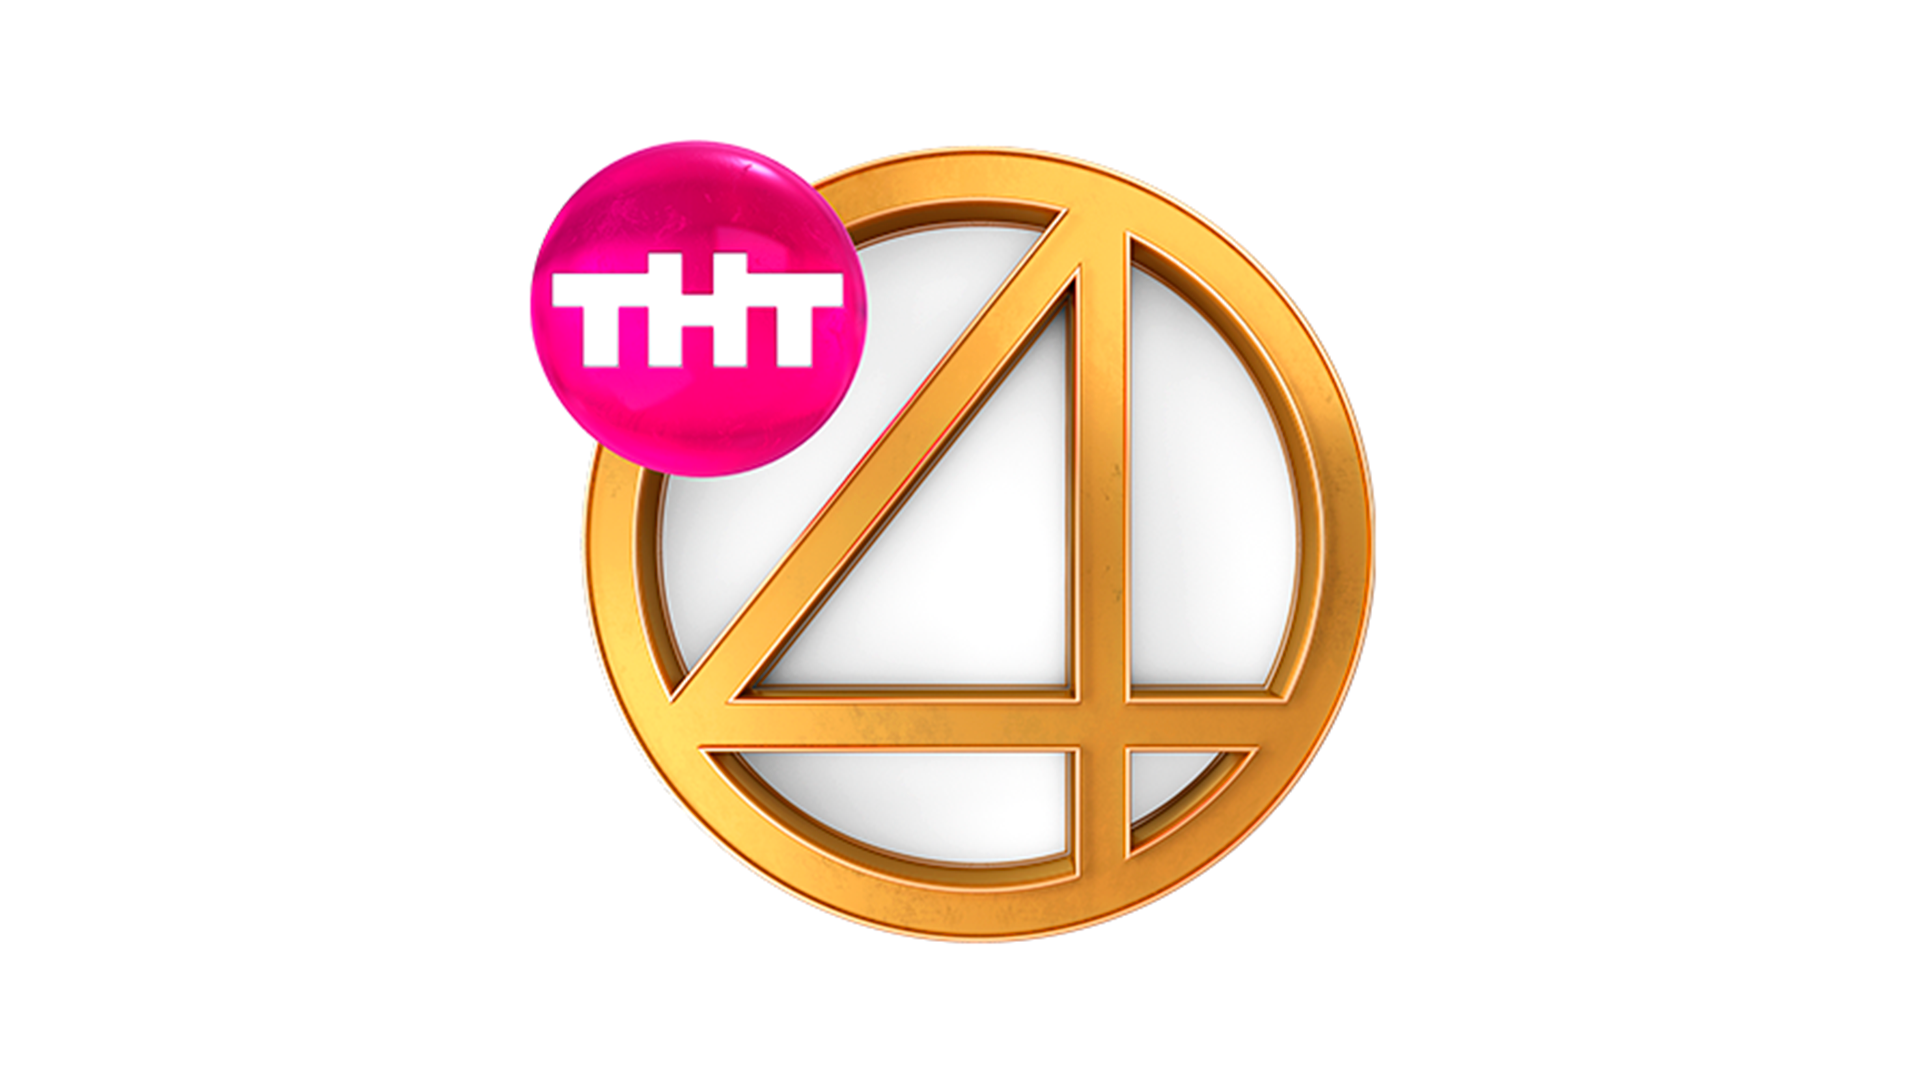 Эфире телеканал тнт 4. Телеканал ТНТ 4 новый логотип. Четвёртый канал эмблема телеканала ТНТ 4. Логотип тнт4 2017-н.в. ТНТ 4 прямой эфир.